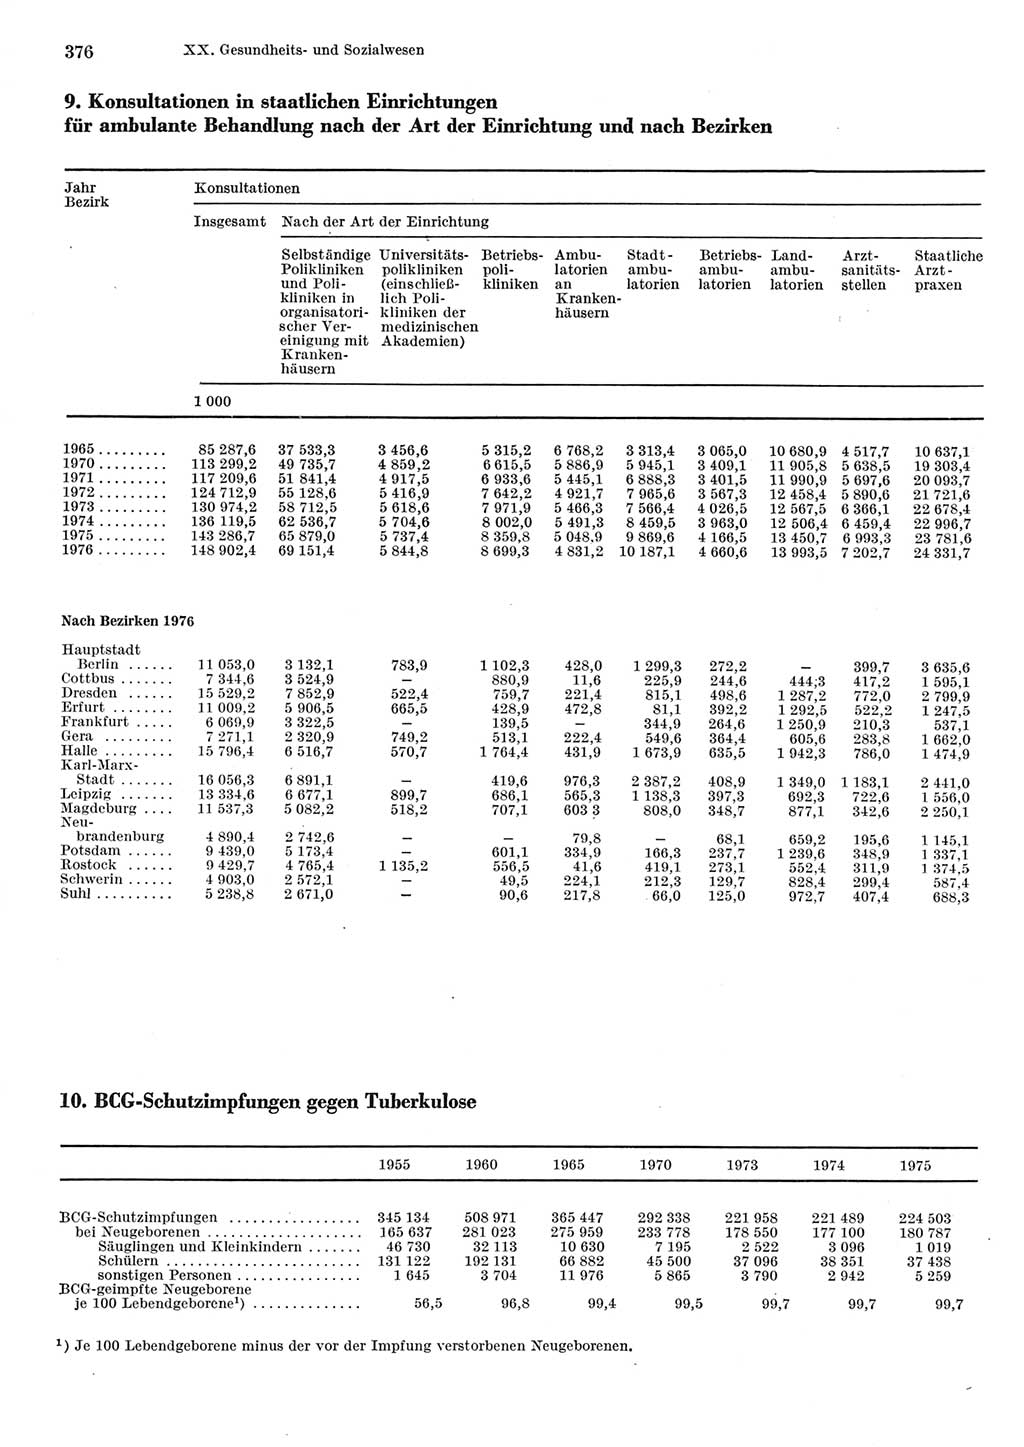 Statistisches Jahrbuch der Deutschen Demokratischen Republik (DDR) 1977, Seite 376 (Stat. Jb. DDR 1977, S. 376)